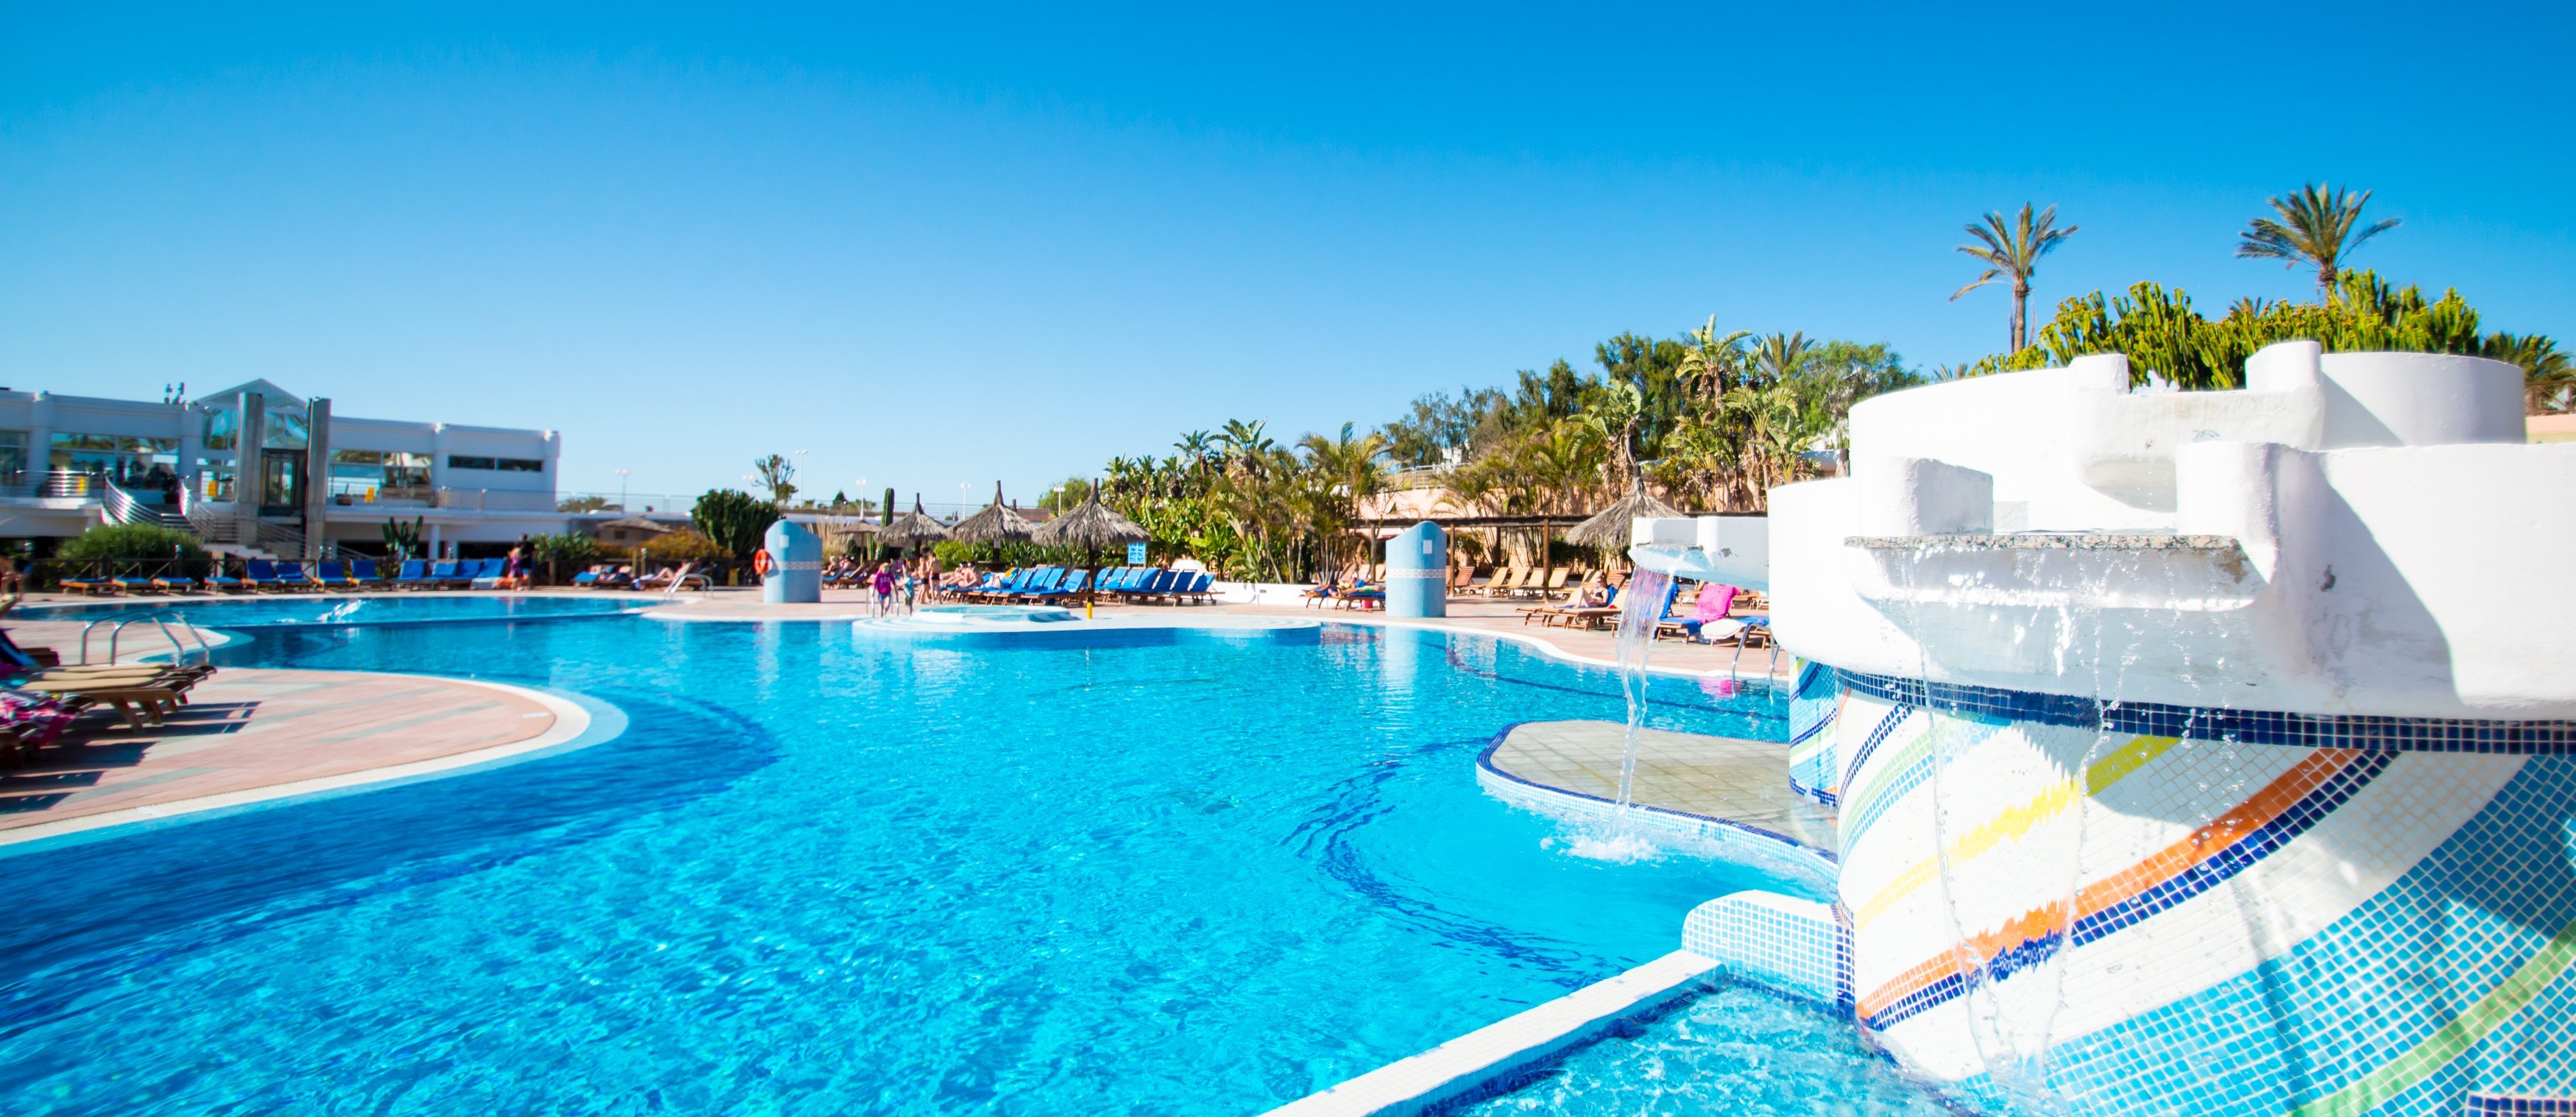 HL Club Playa Blanca**** Hotel - Lanzarote - 